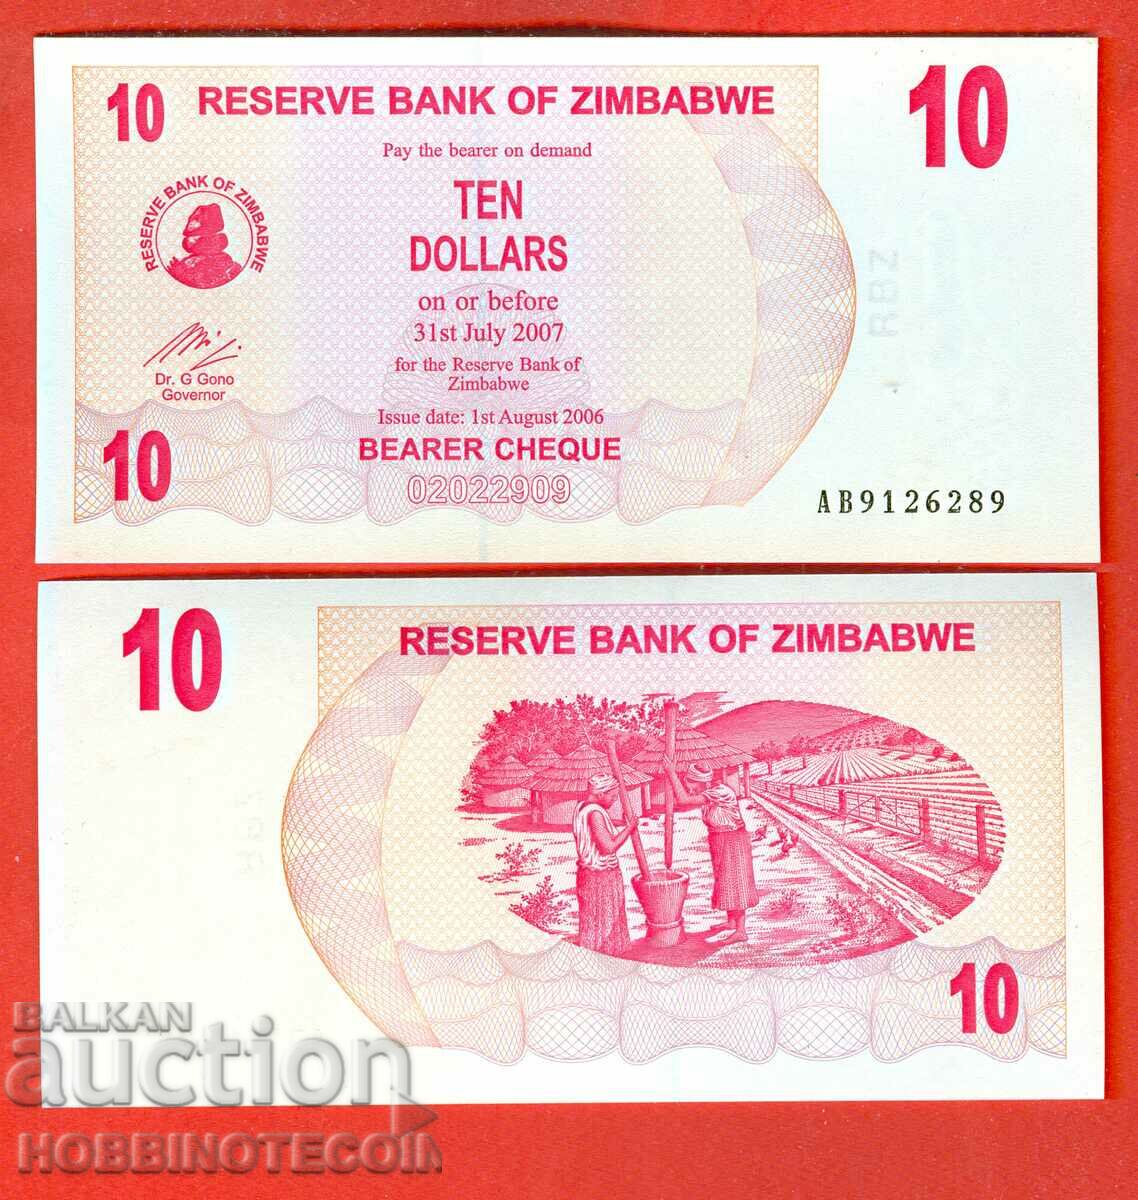 ZIMBABWE ZIMBABWE emisiune de 10 USD - emisiune 2007 NOU UNC